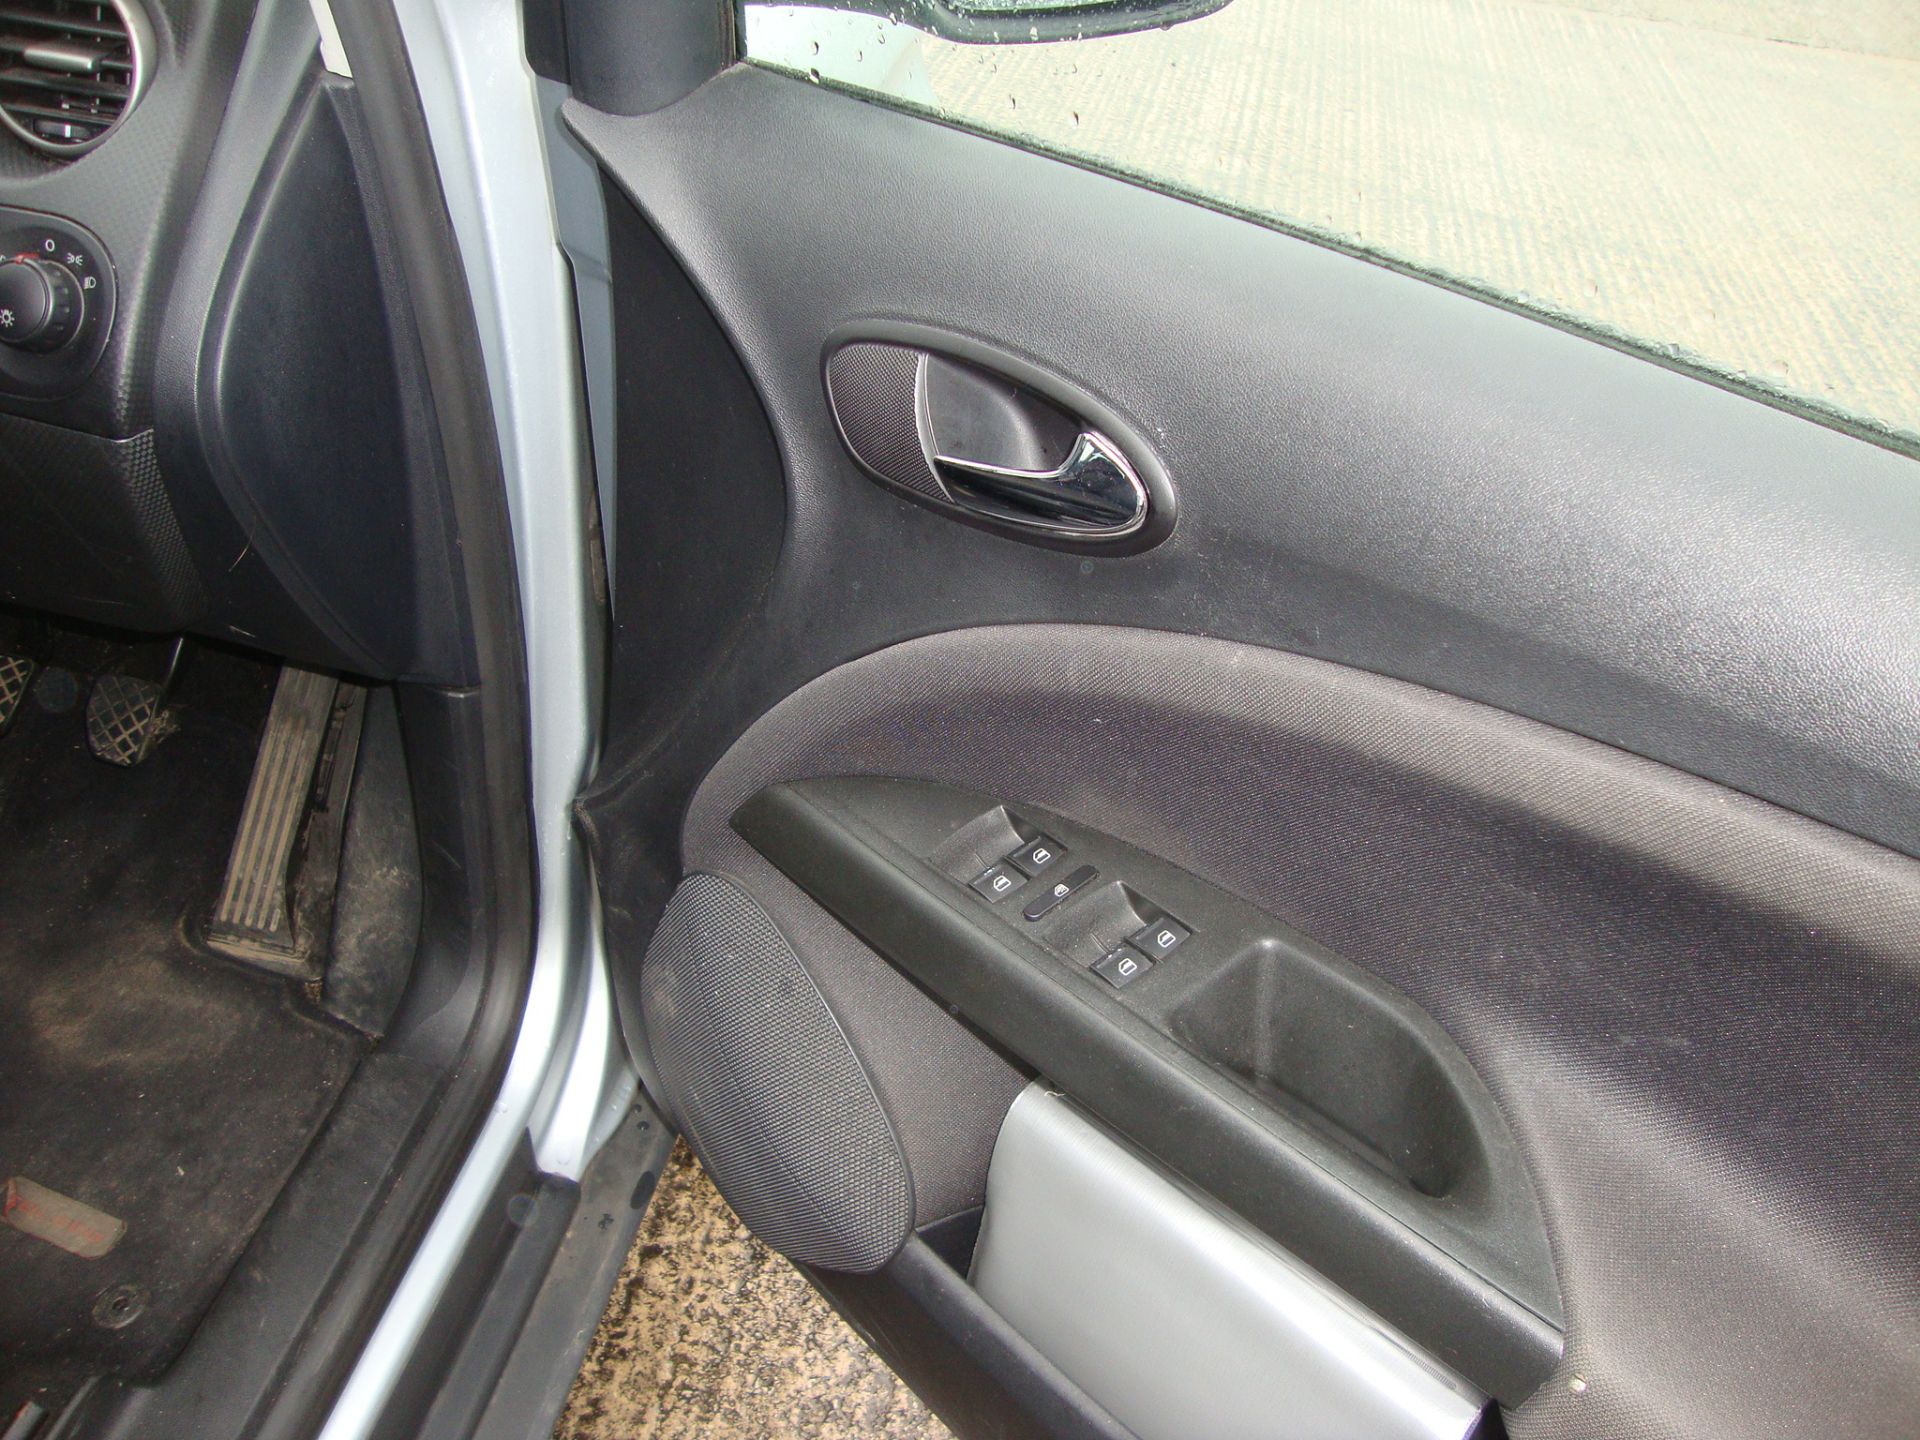 YR05 WSY Seat Toledo Sport FSI 5-door hatchback - Image 6 of 12